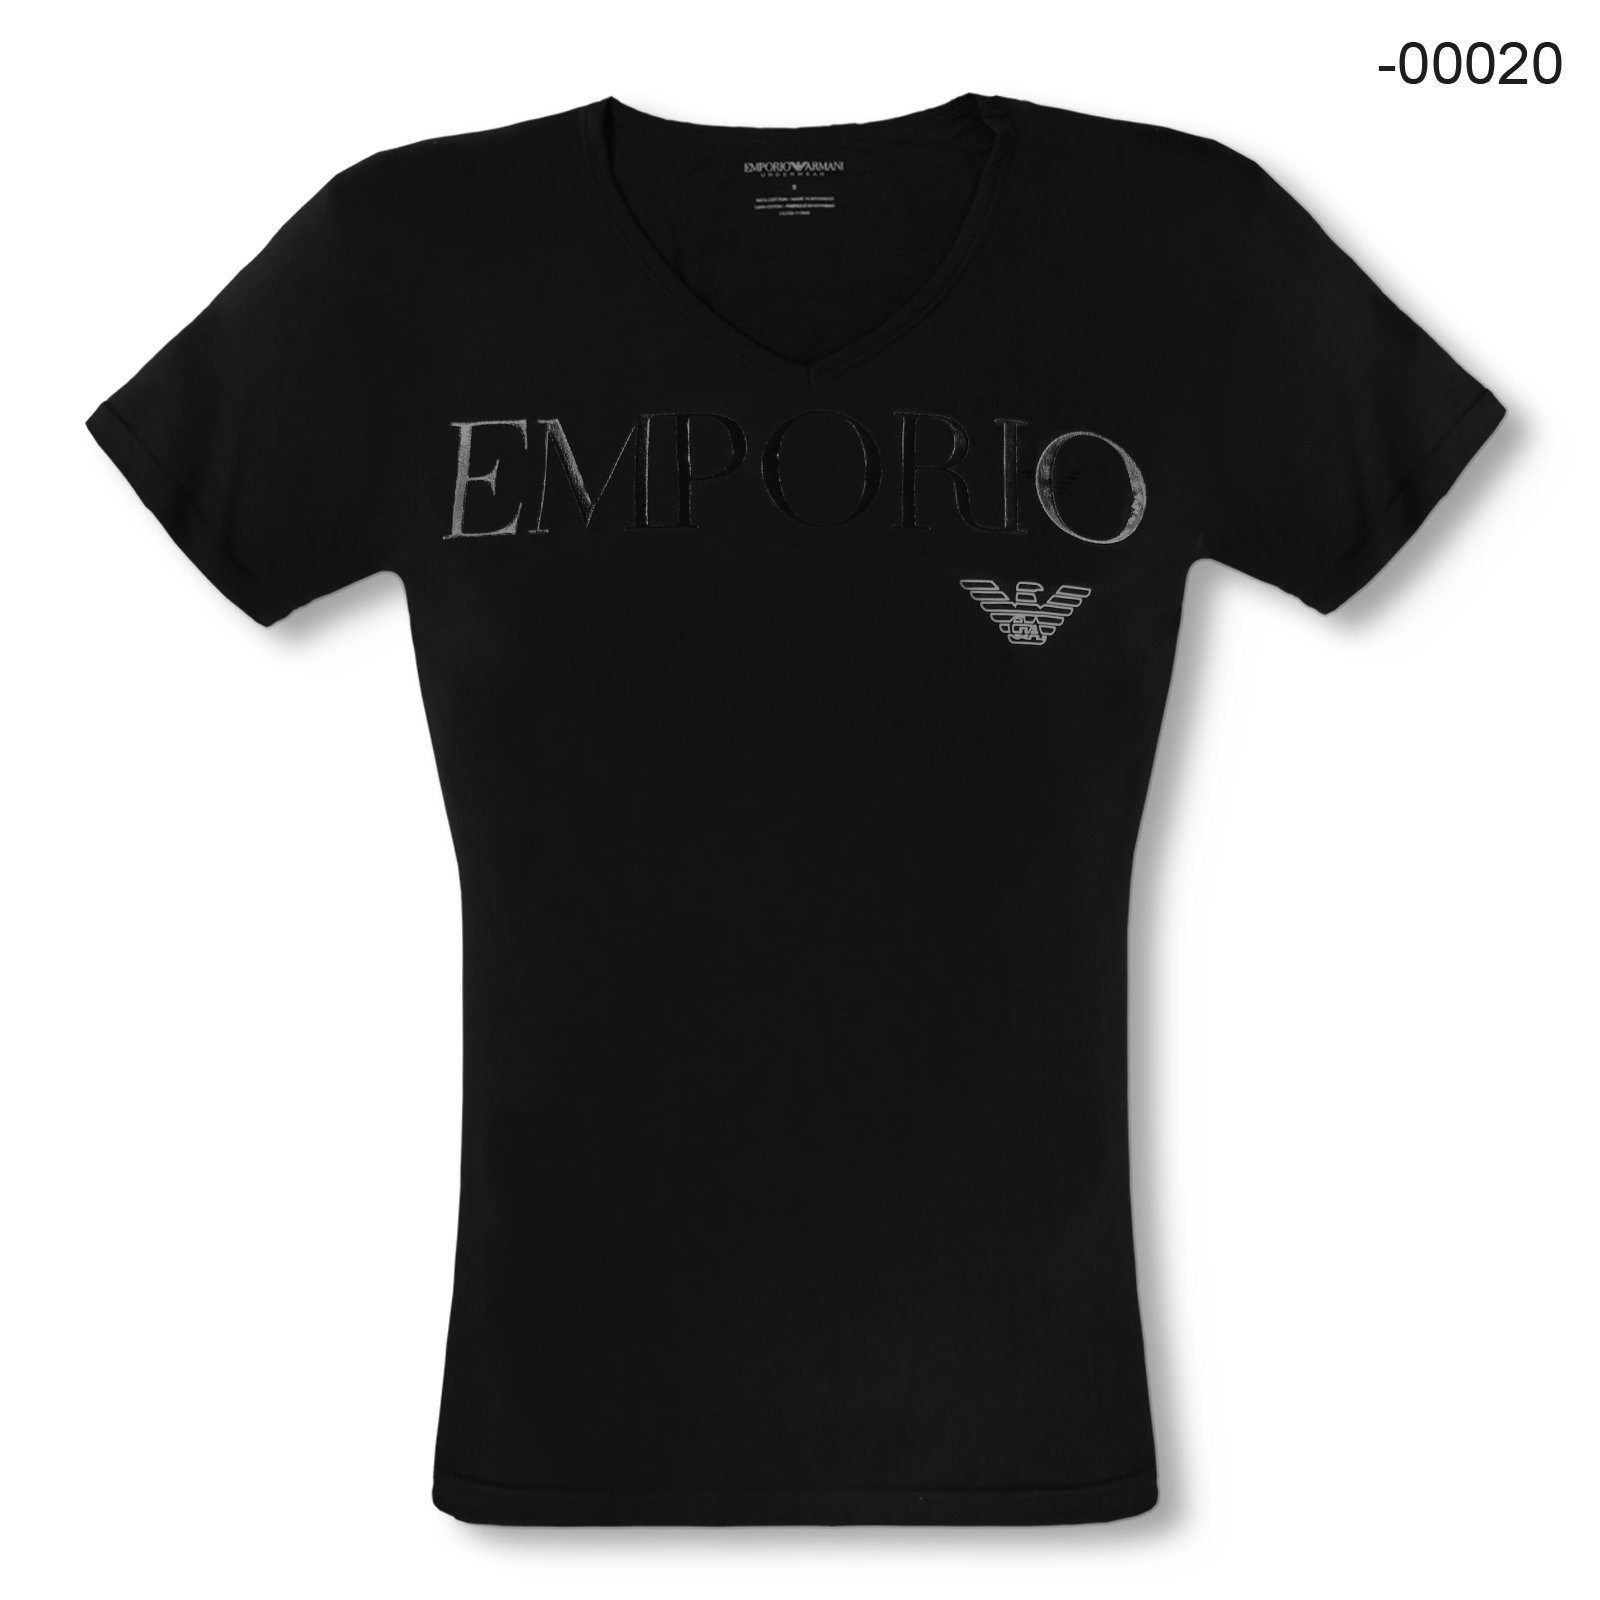 Emporio Armani T-Shirt V-Neck Stretch Cotton mit Markenschriftzug und Eagle-Logo auf der Brust 00020 black